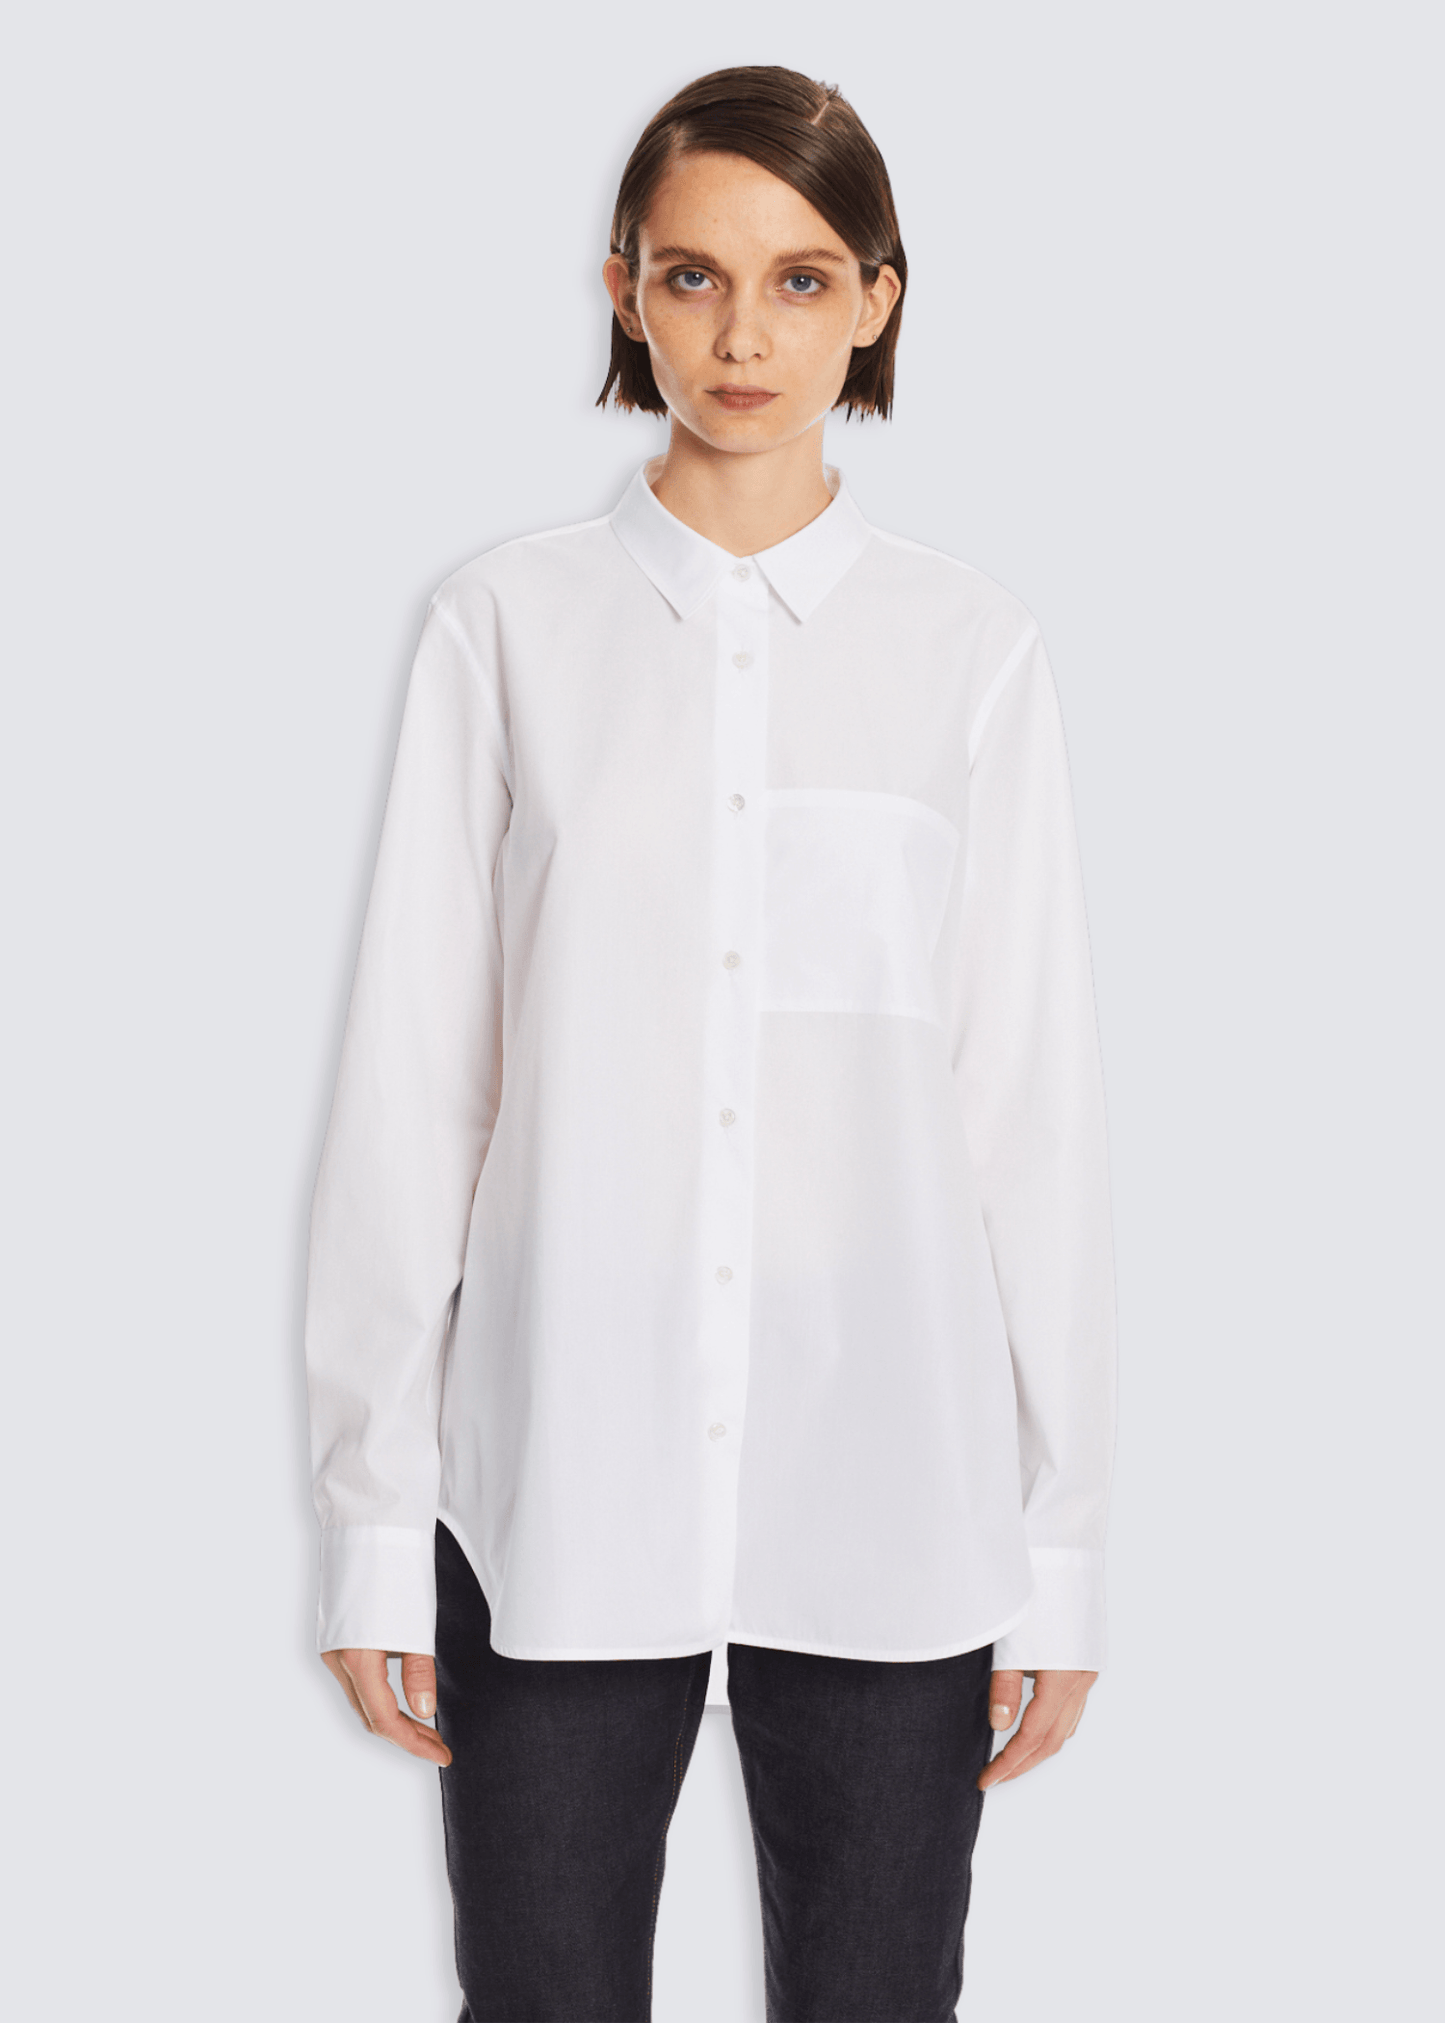 Lenon, Optic White, Hemd - Lindner Fashion